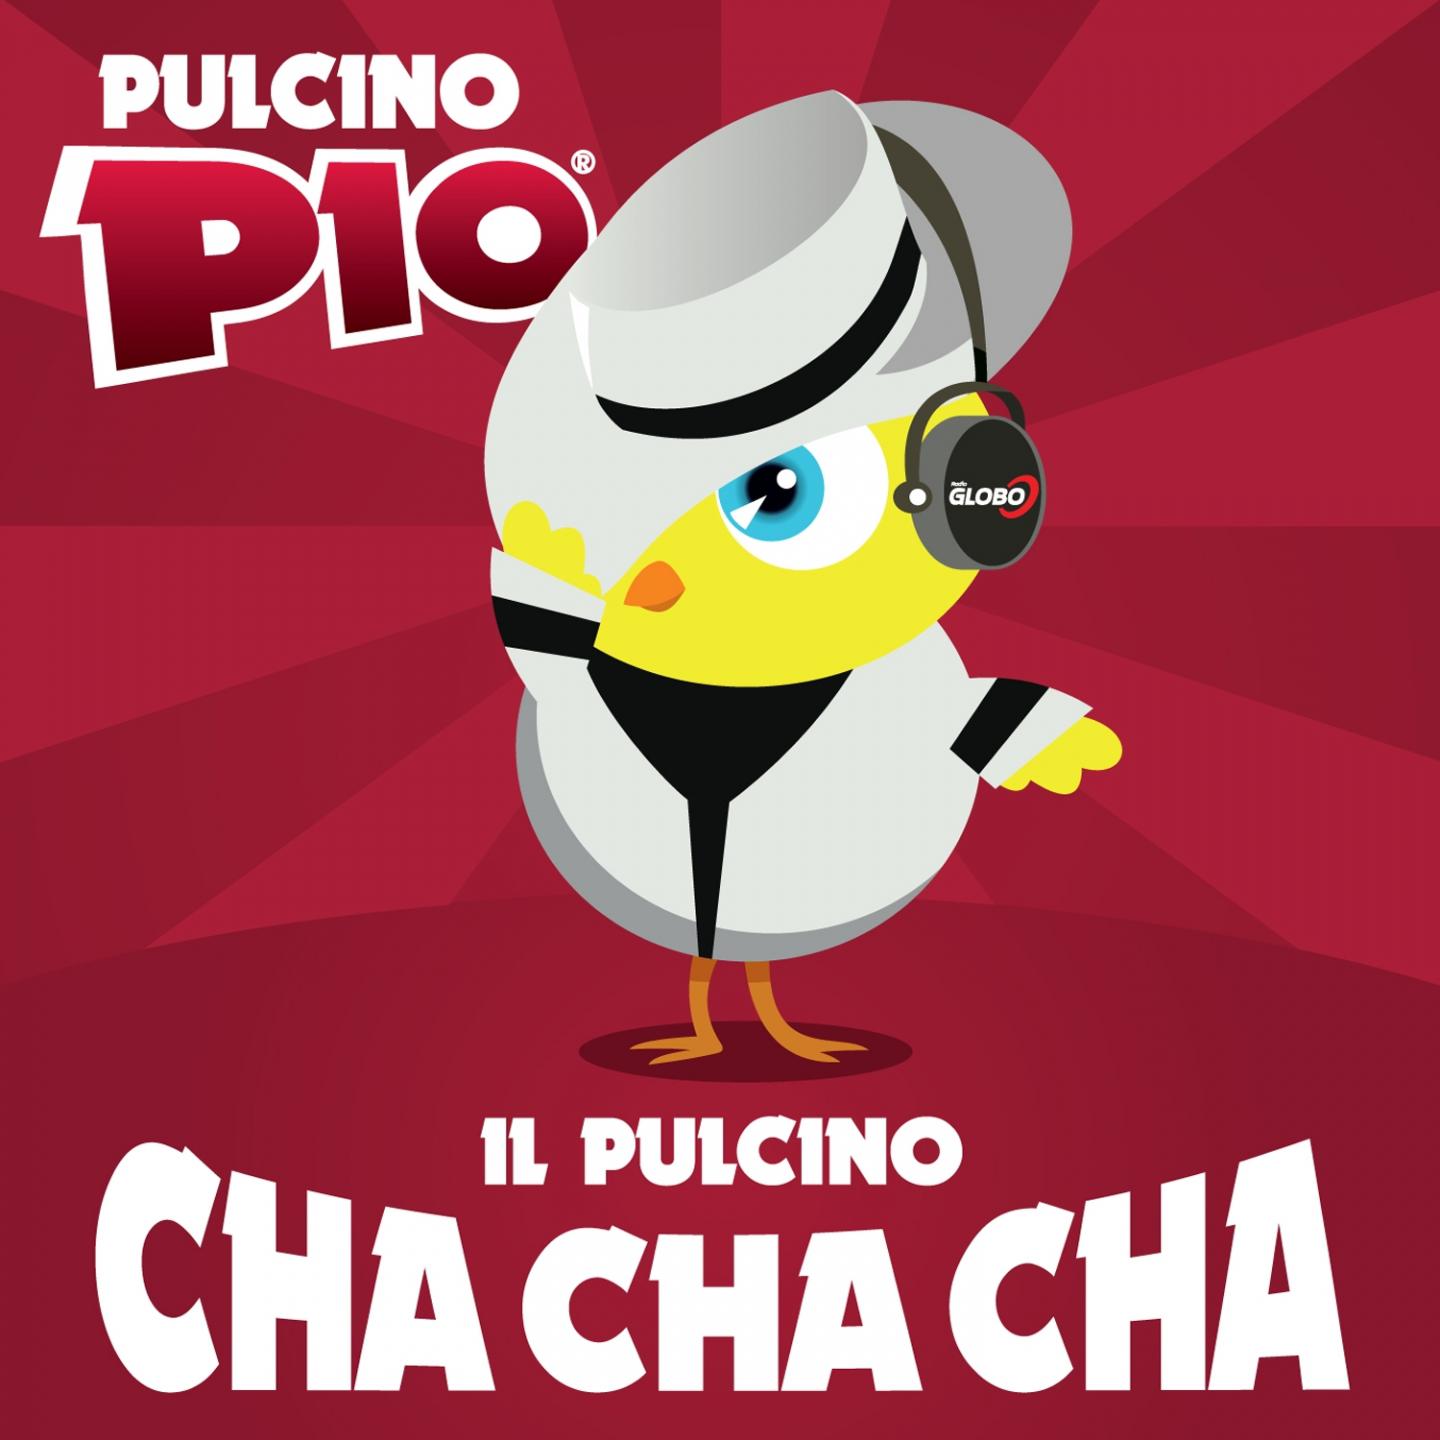 Pulcino Pio - Il pulcino cha cha cha